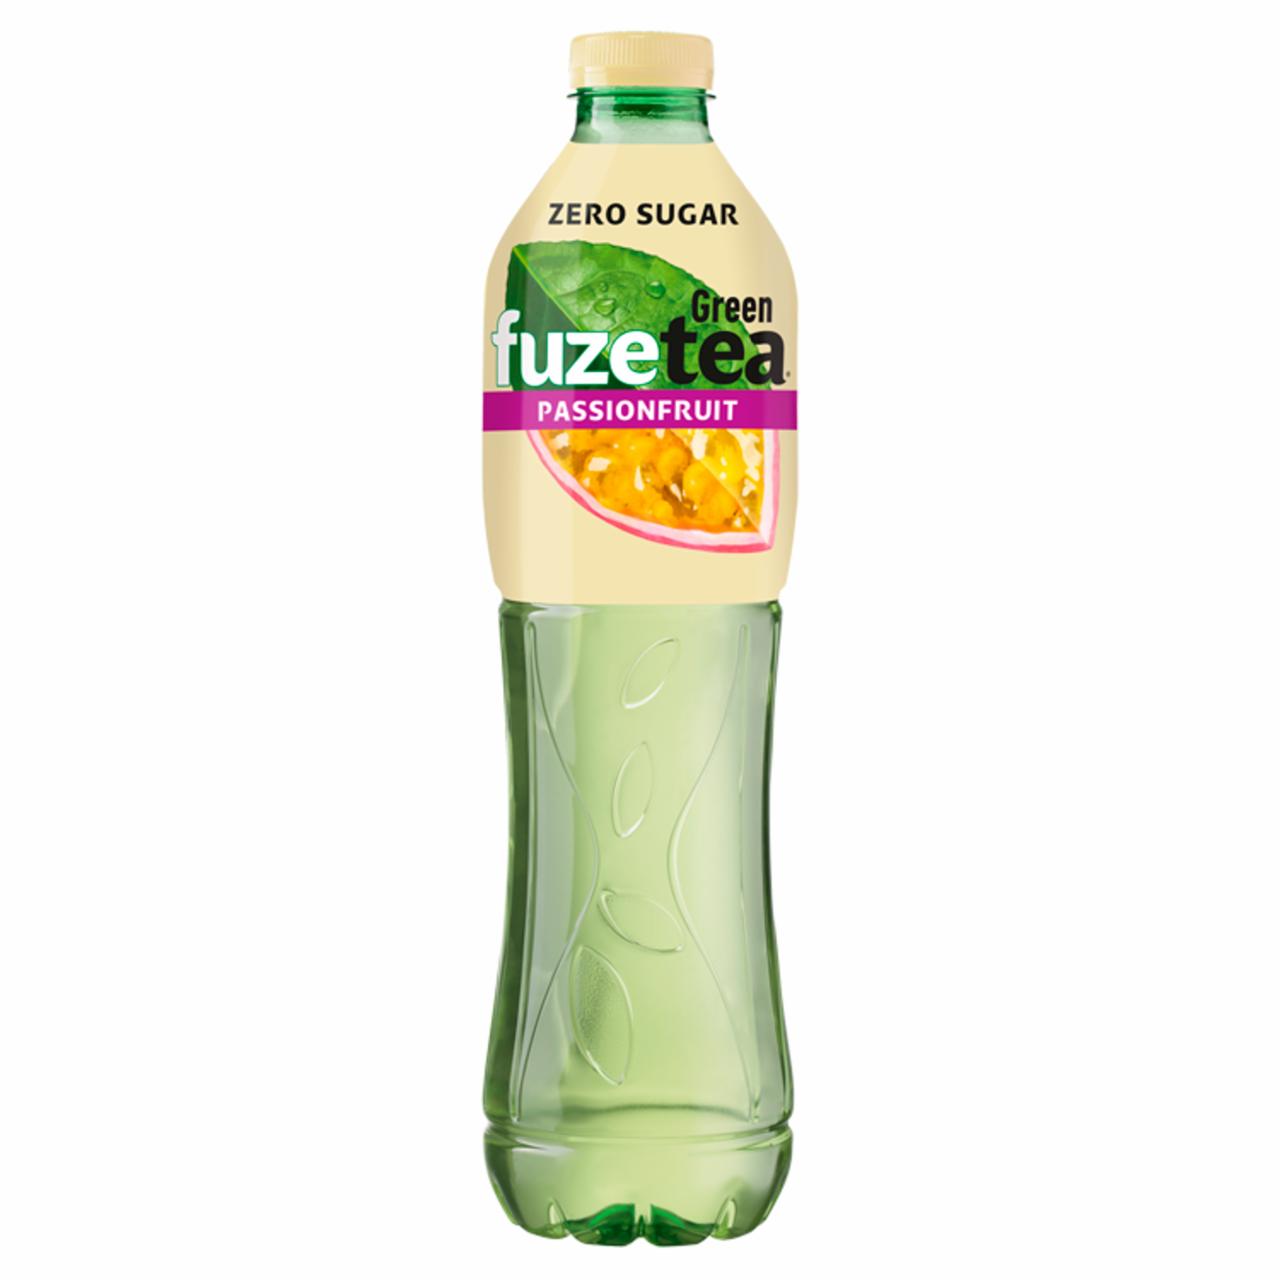 Képek - FUZETEA Passionfruit energiamentes, szénsavmentes maracujaízű üdítőital zöld tea kivonattal 1,5 l